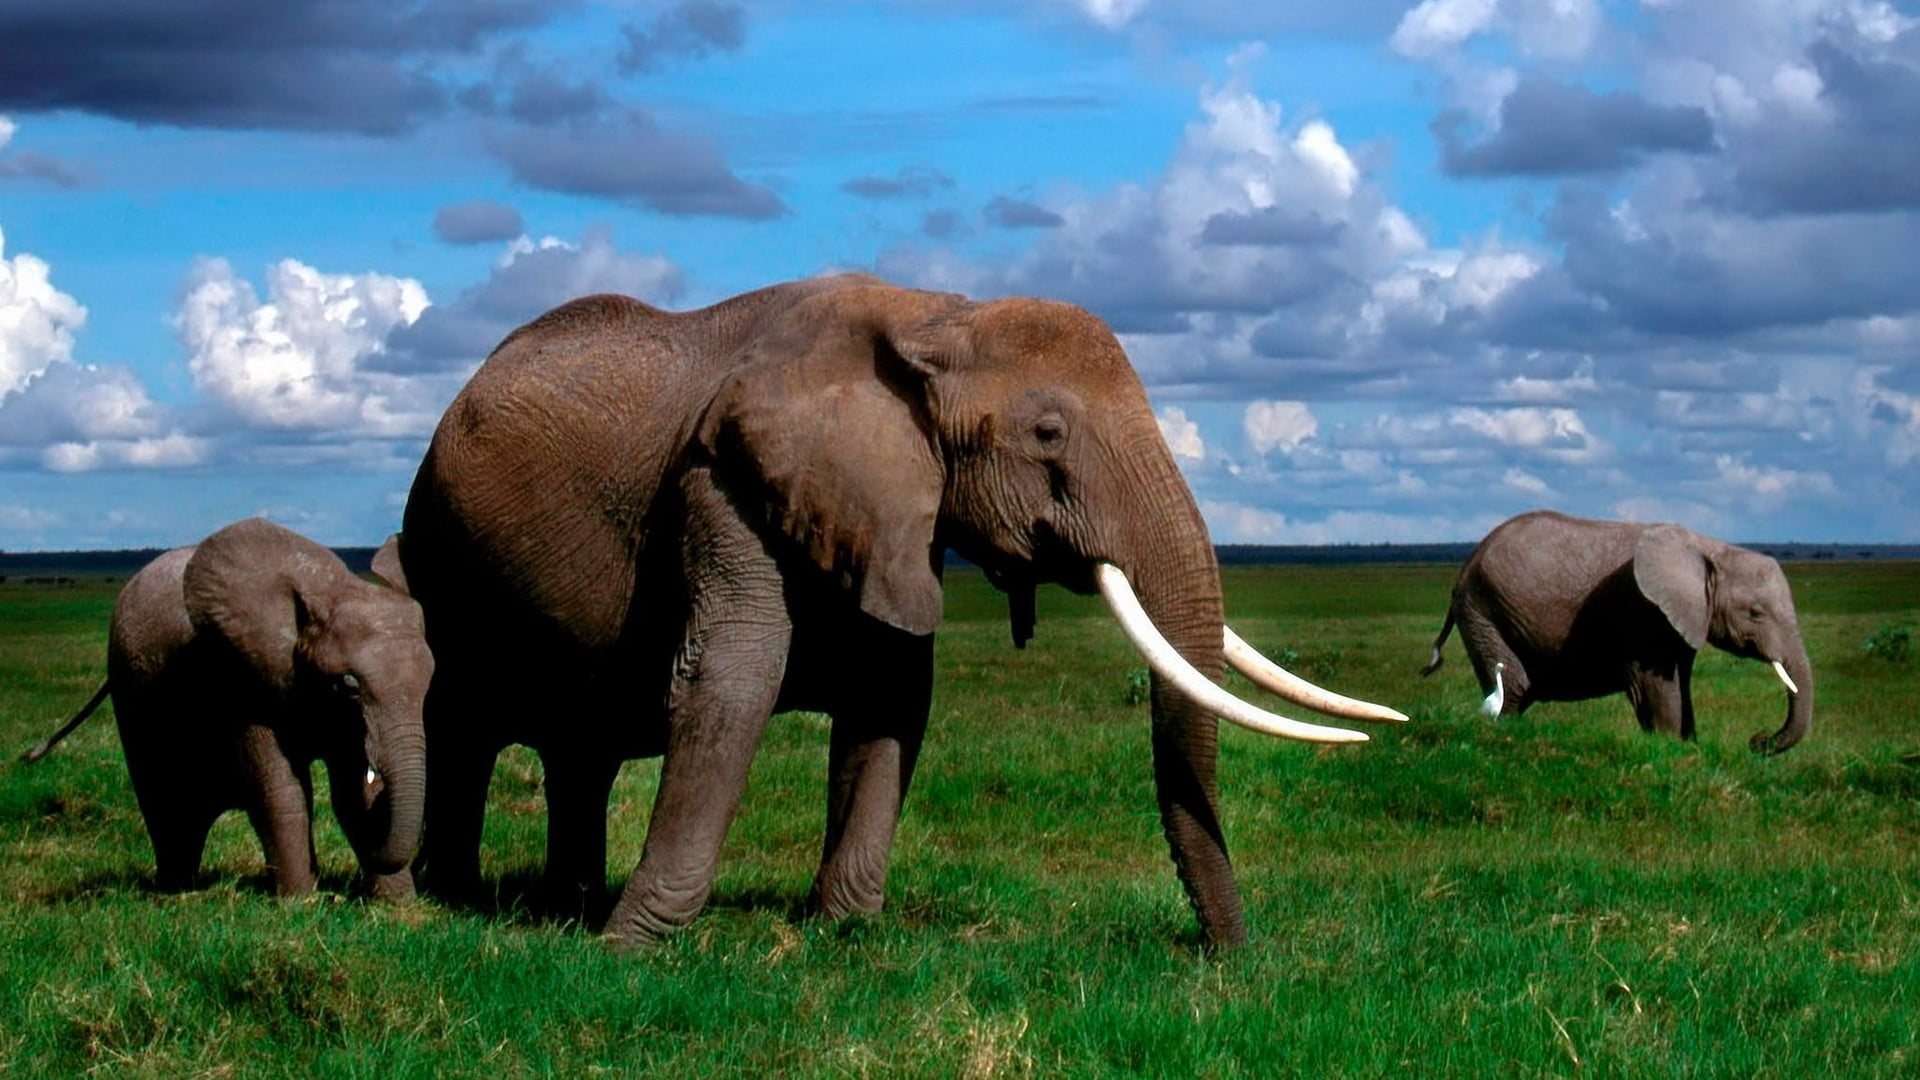 Elephants are big cats. Африканские животные. Слоны. Слон фото. Африканские слоны.